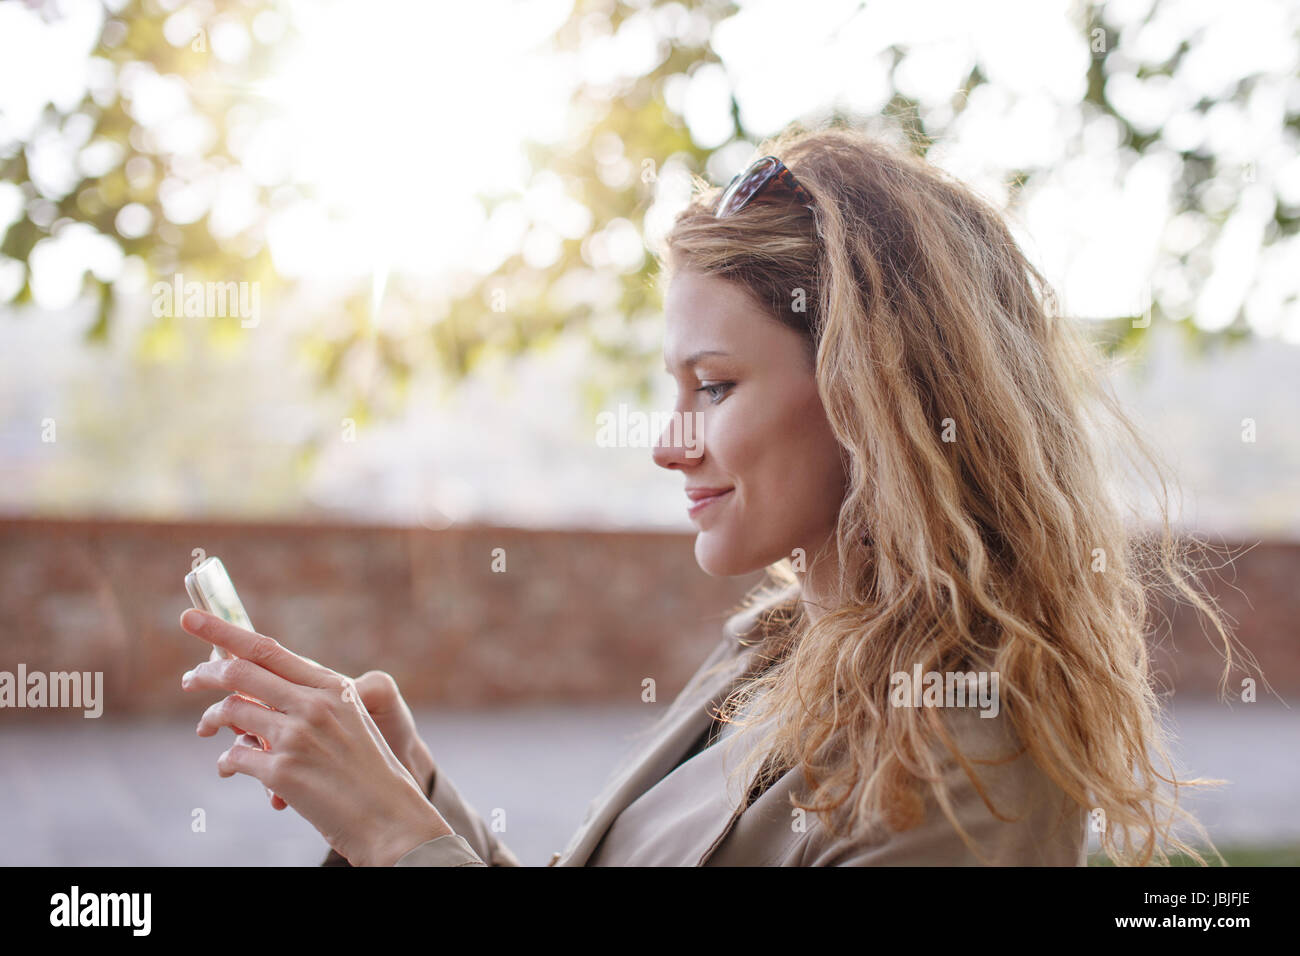 Frau messaging oder auf Outdoor-Smartphone spielen Stockfoto